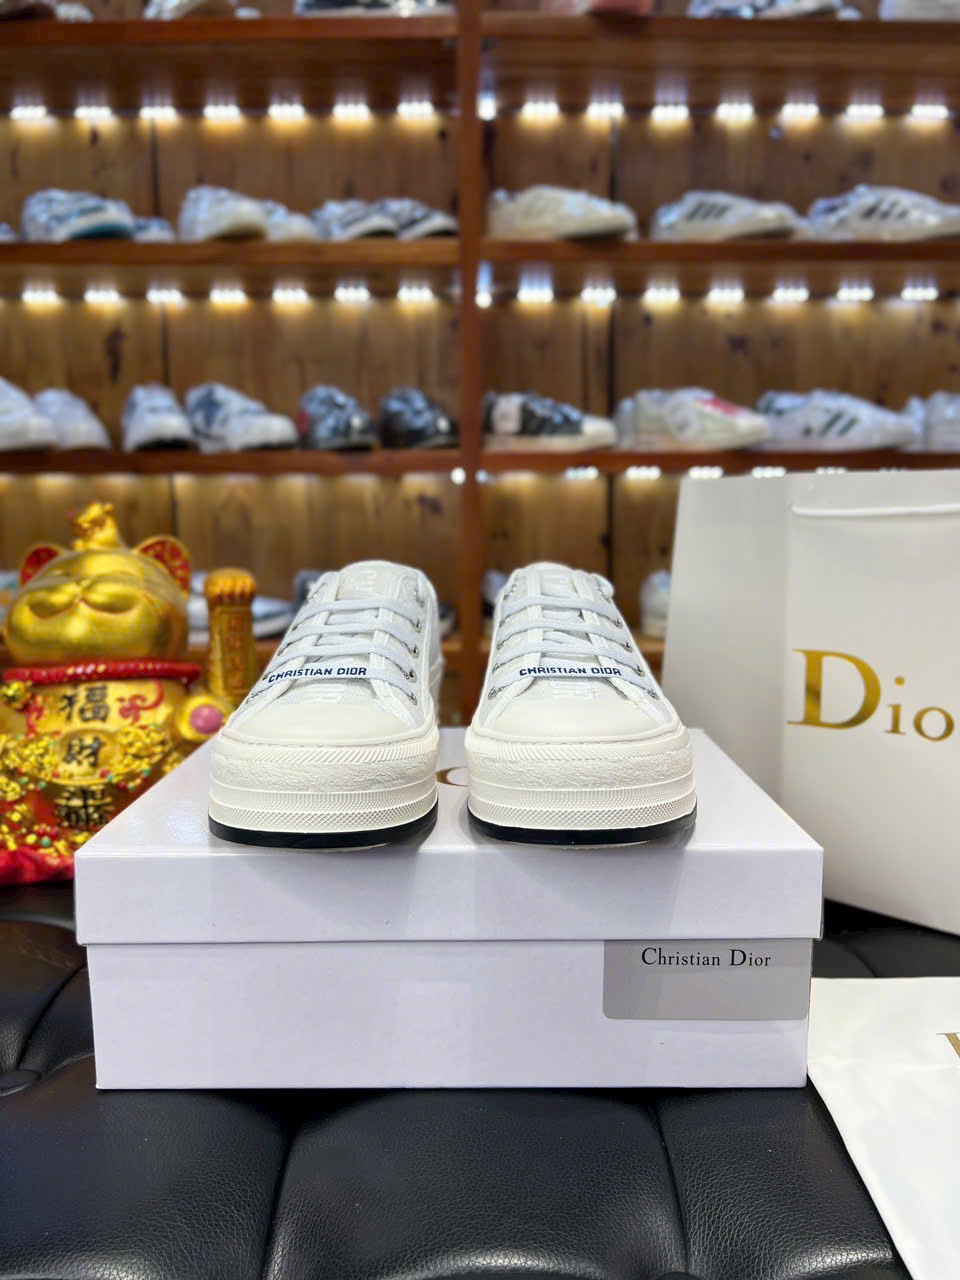 Giày Dior Walk'n' Platform Sneaker White Embroider Cotton Canvas Best Quality